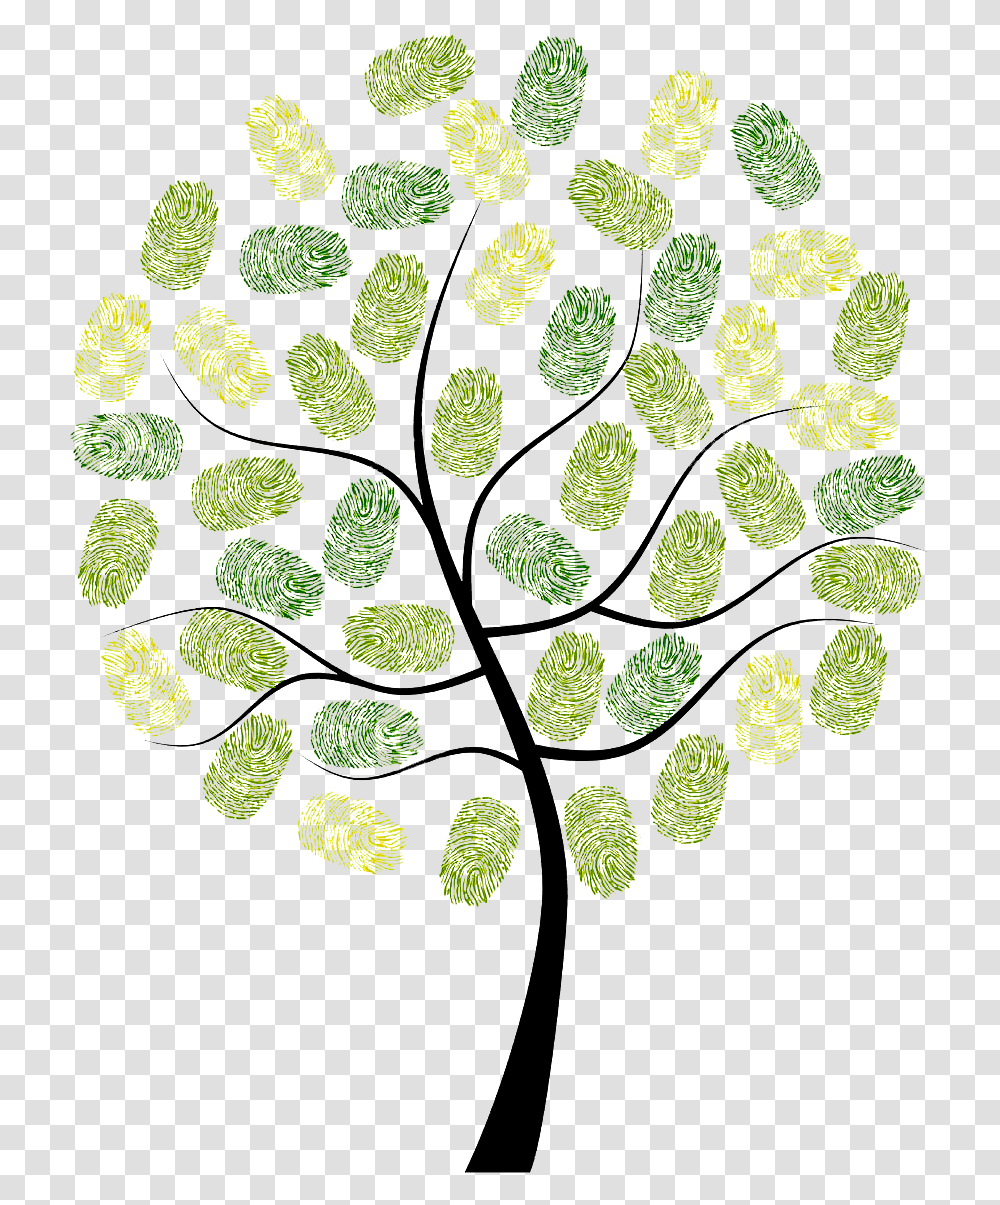 Fingerprint Owl Tree Digit Euclidean Vector Arbol Huellas Vectores De Arboles, Rug, Plant, Pattern, Pollen Transparent Png